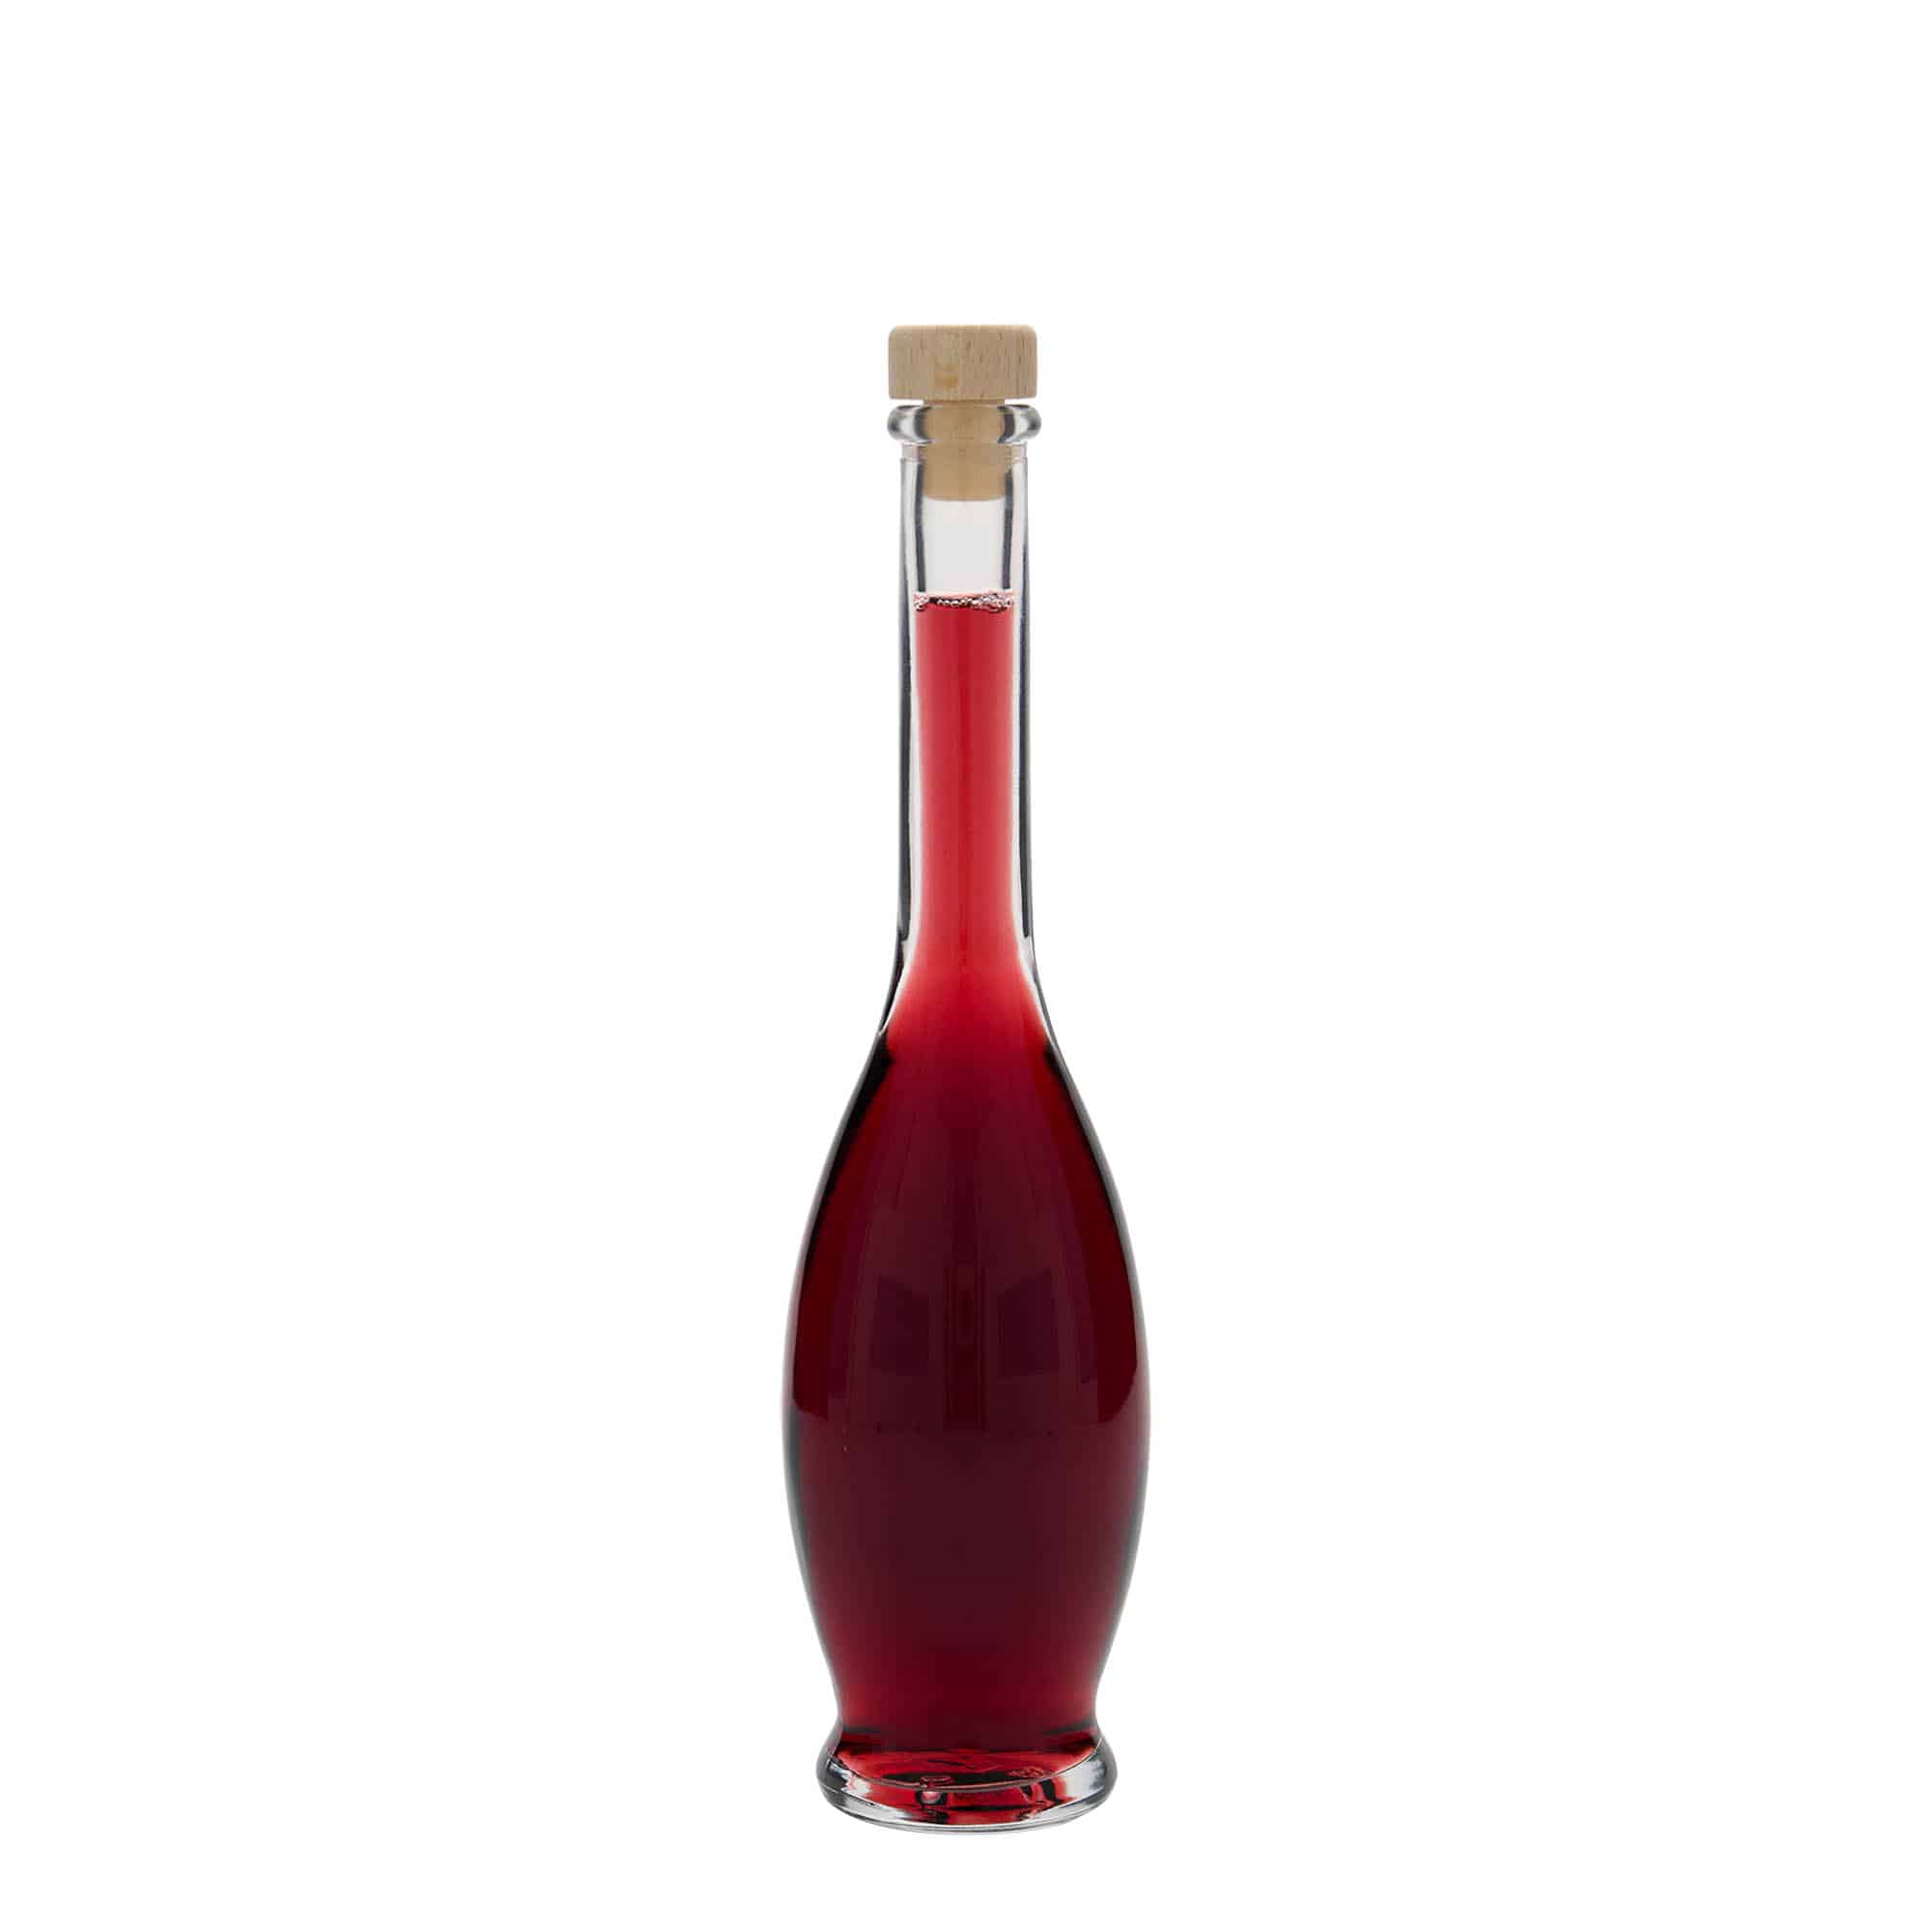 100 ml glass bottle 'Gina', closure: cork